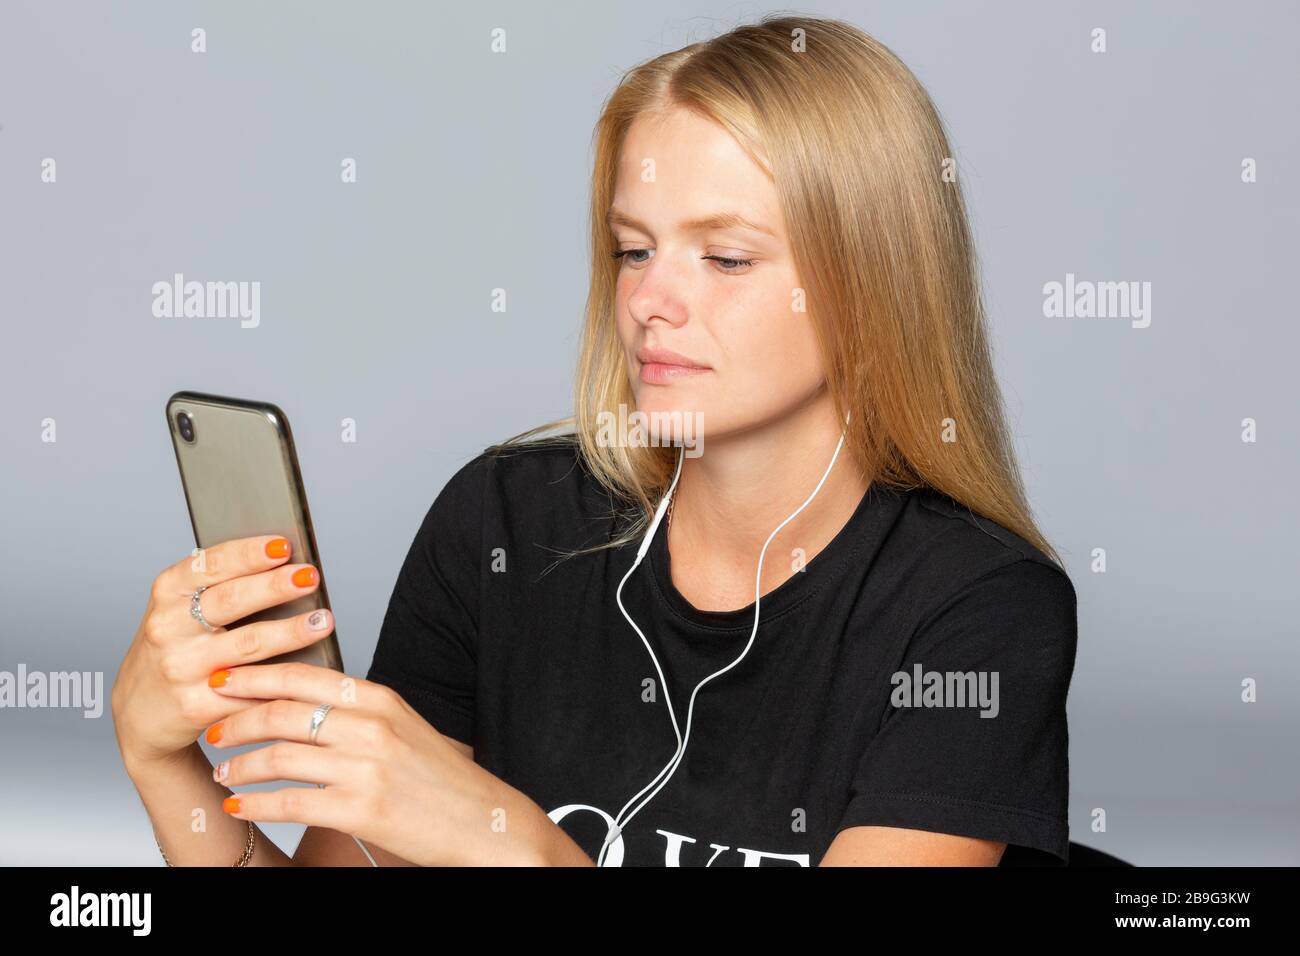 Jeune femme écoutant de la musique avec un smartphone et un casque Banque D'Images